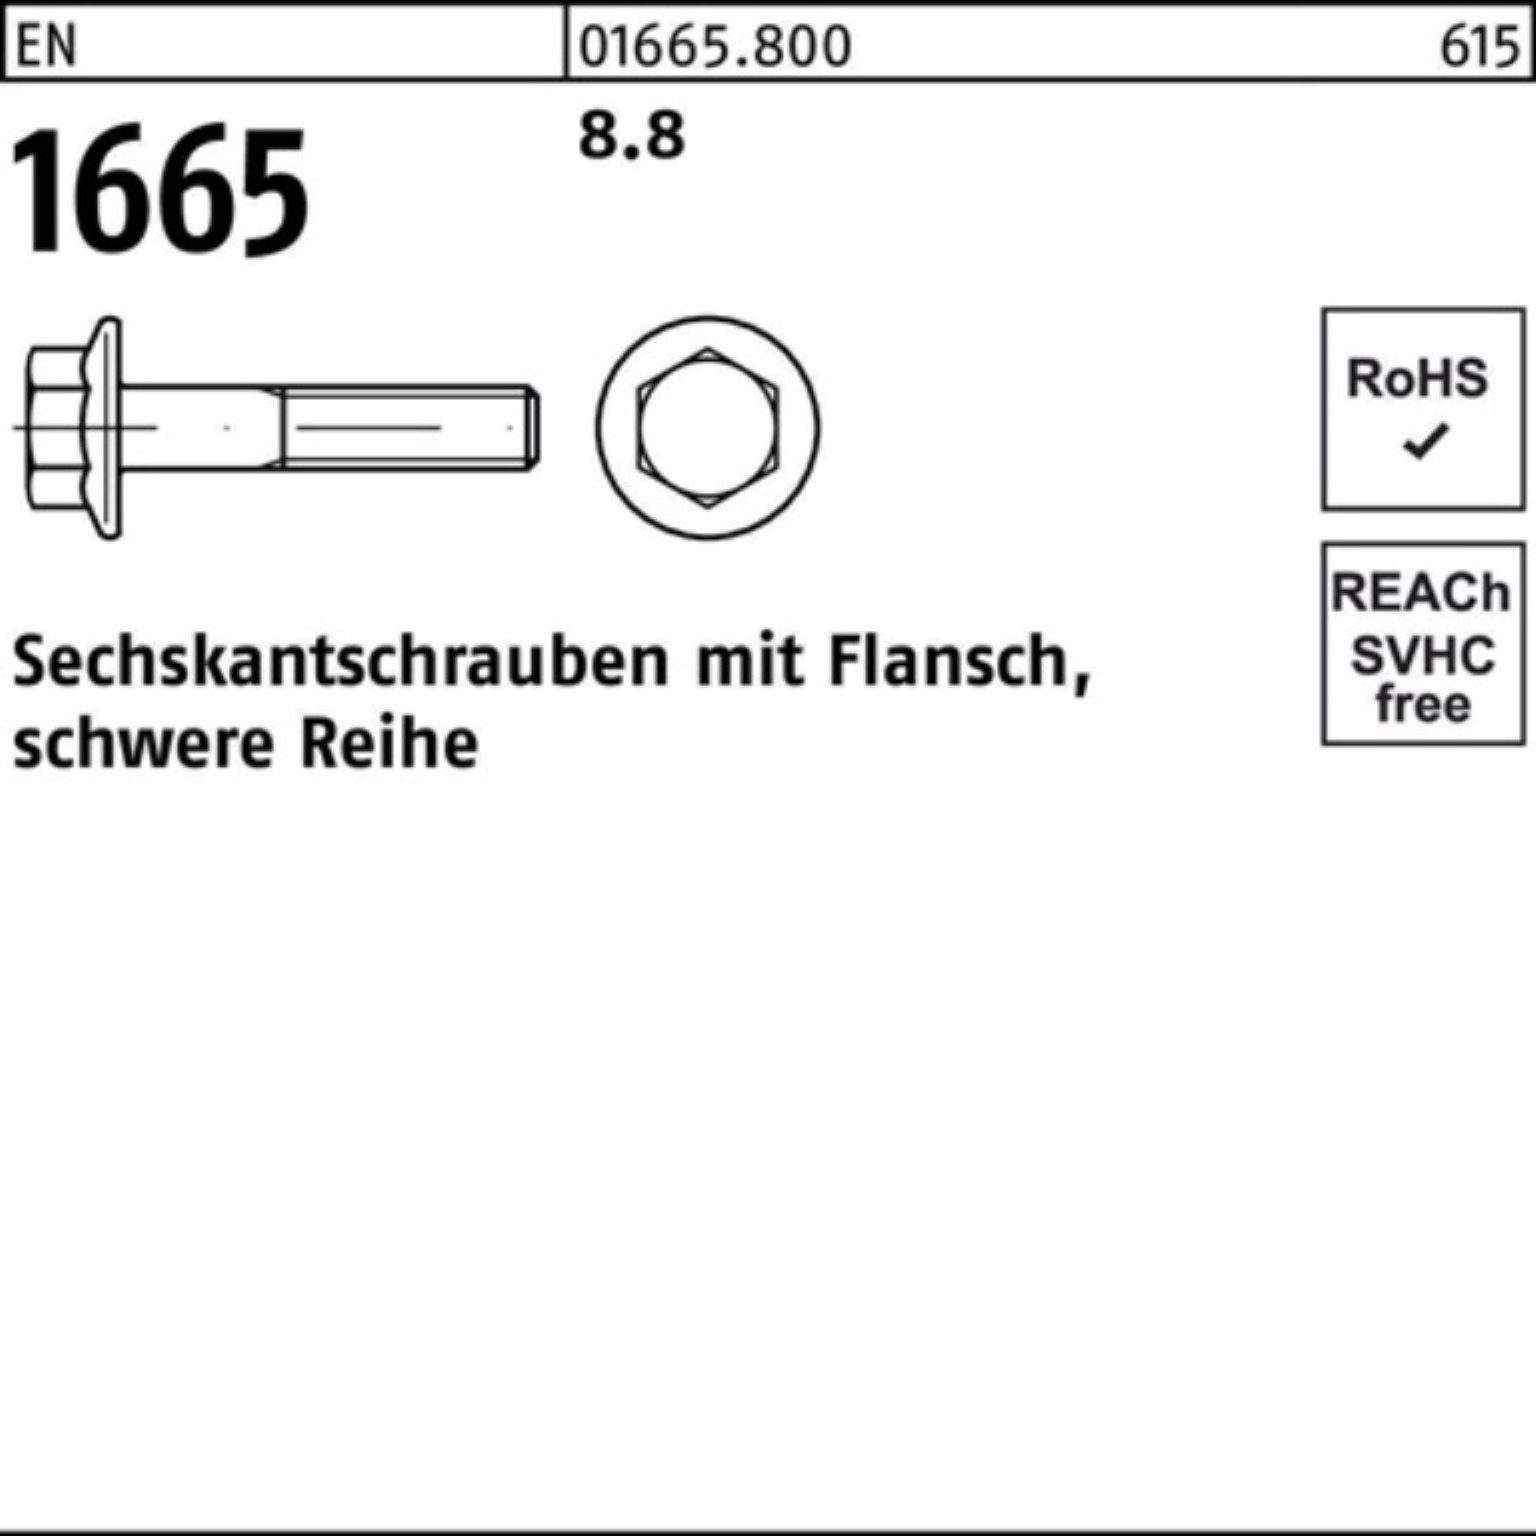 100 60 Stück Sechskantschraube Flansch Reyher 1665 EN Sechskantschraube 8.8 M10x Pack EN 100er